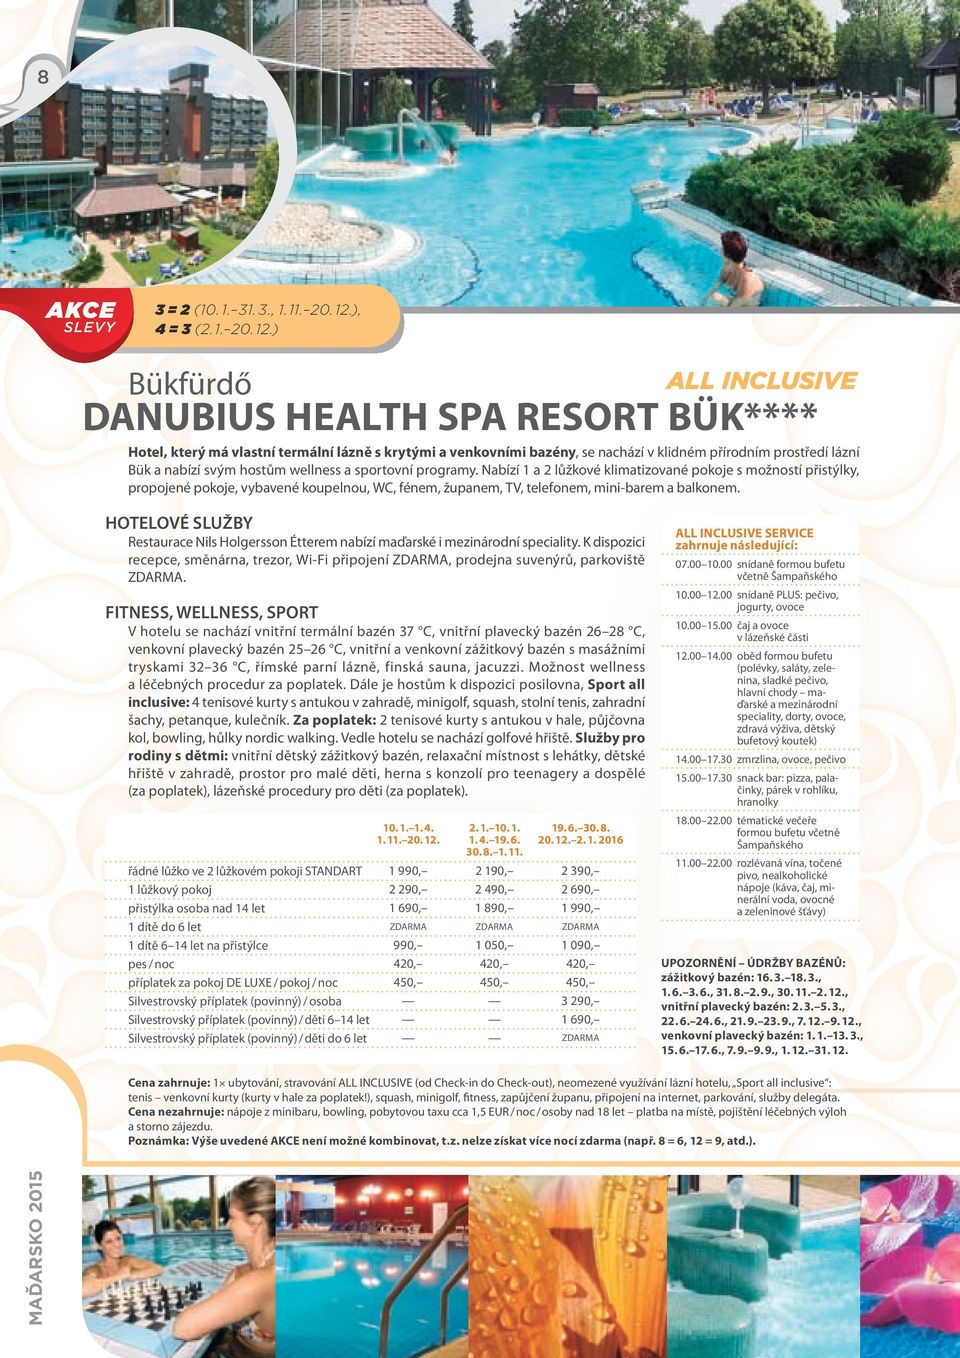 ) Bükfürdő DANUBIUS HEALTH SPA RESORT BÜK**** Hotel, který má vlastní termální lázně s krytými a venkovními bazény, se nachází v klidném přírodním prostředí lázní propojené pokoje, vybavené